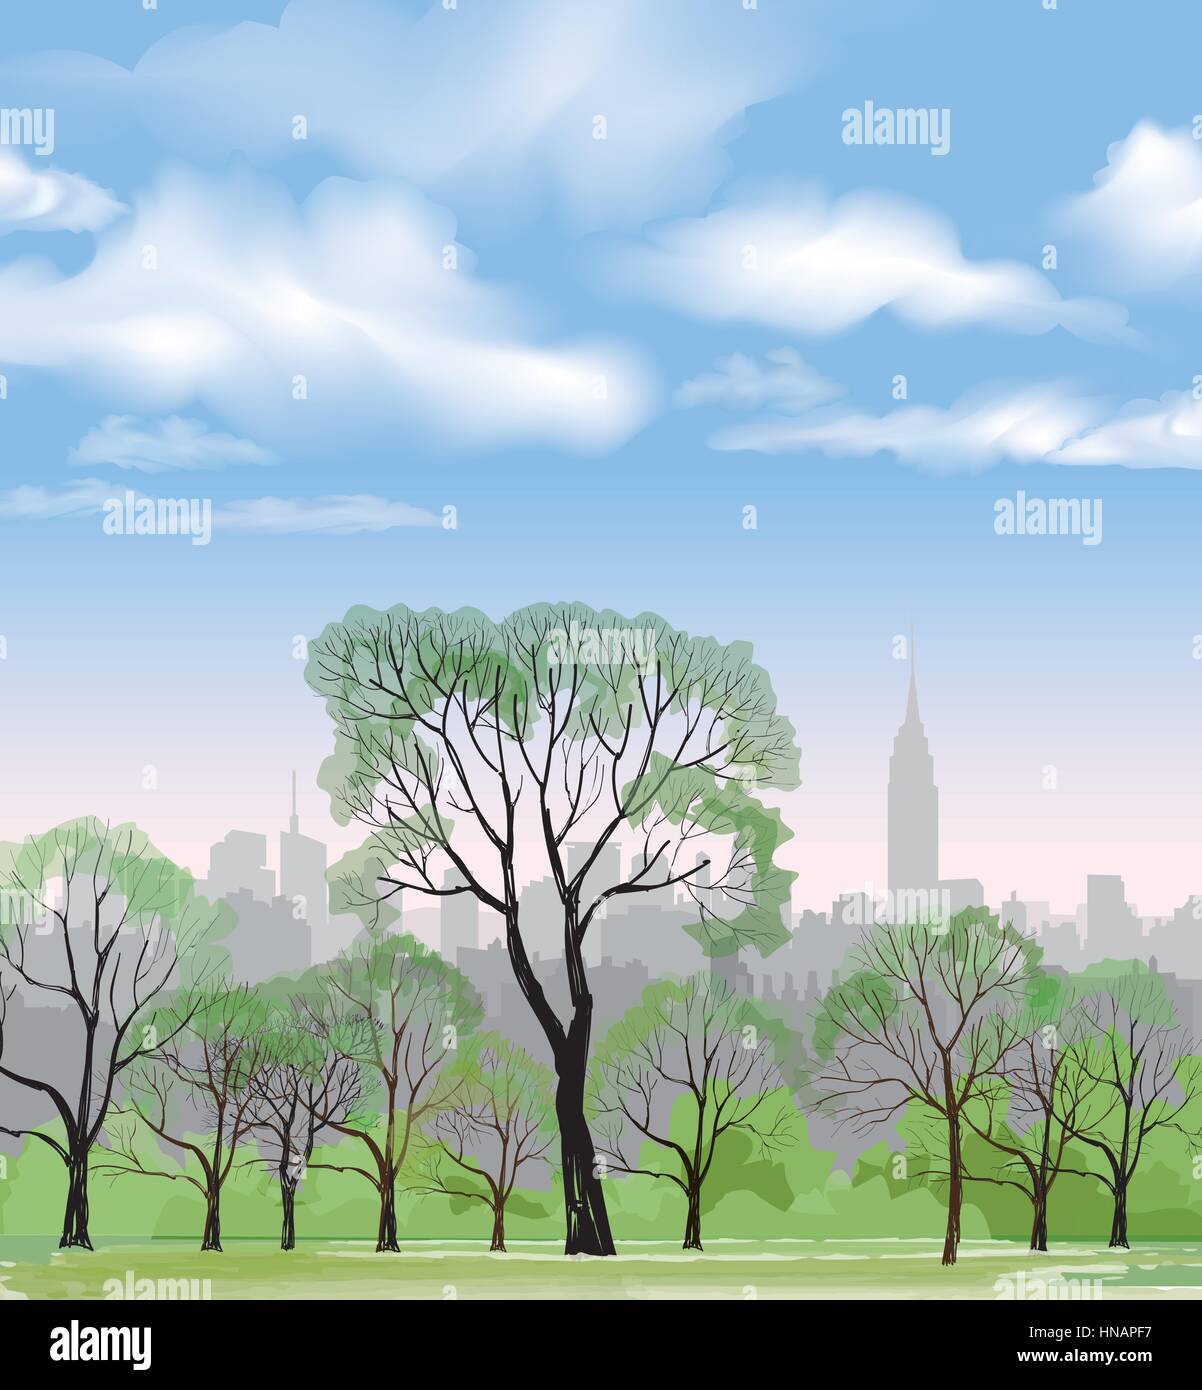 Panca e lampione in parco su sfondo della città. paesaggio di central park a new york. Stati Uniti d'America. Illustrazione Vettoriale